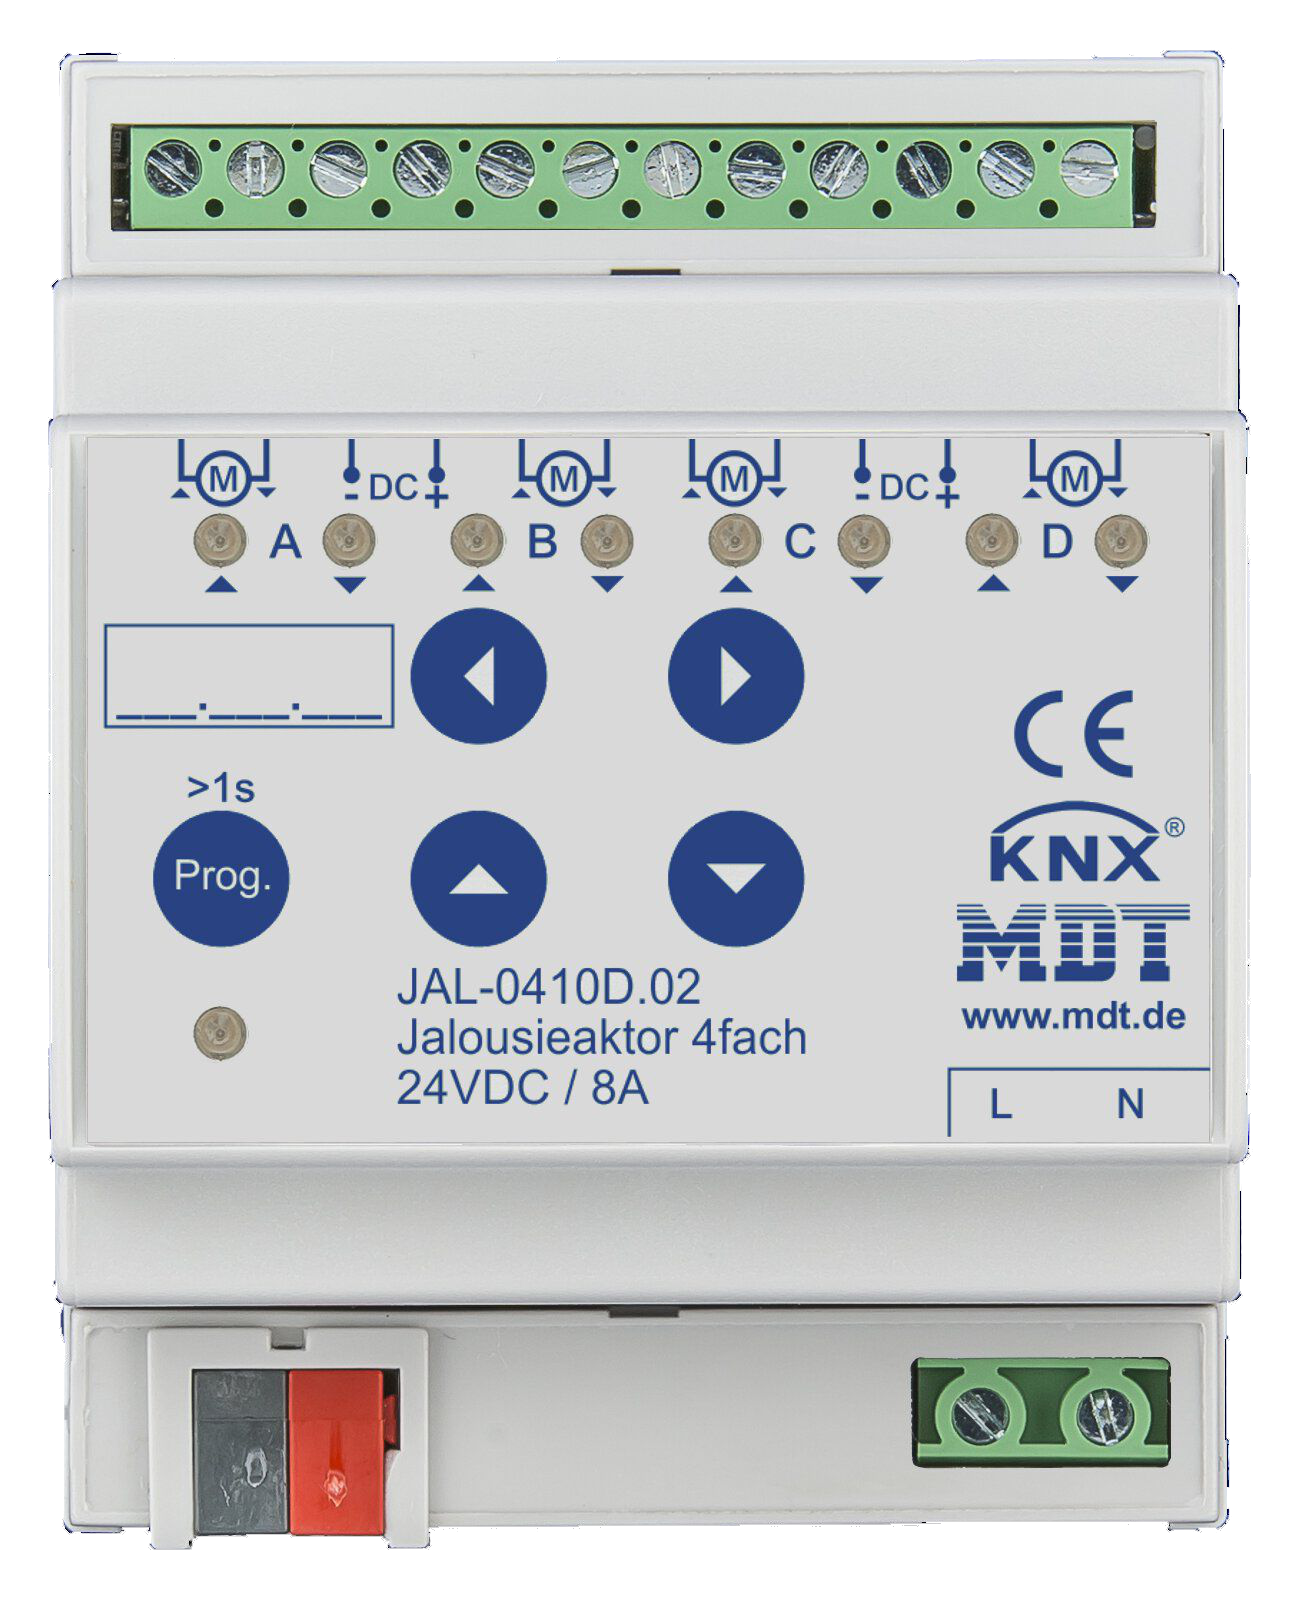 MDT JAL-0410D.02 Jalousieaktor 4-fach, 4TE REG, 8A, 24VDC